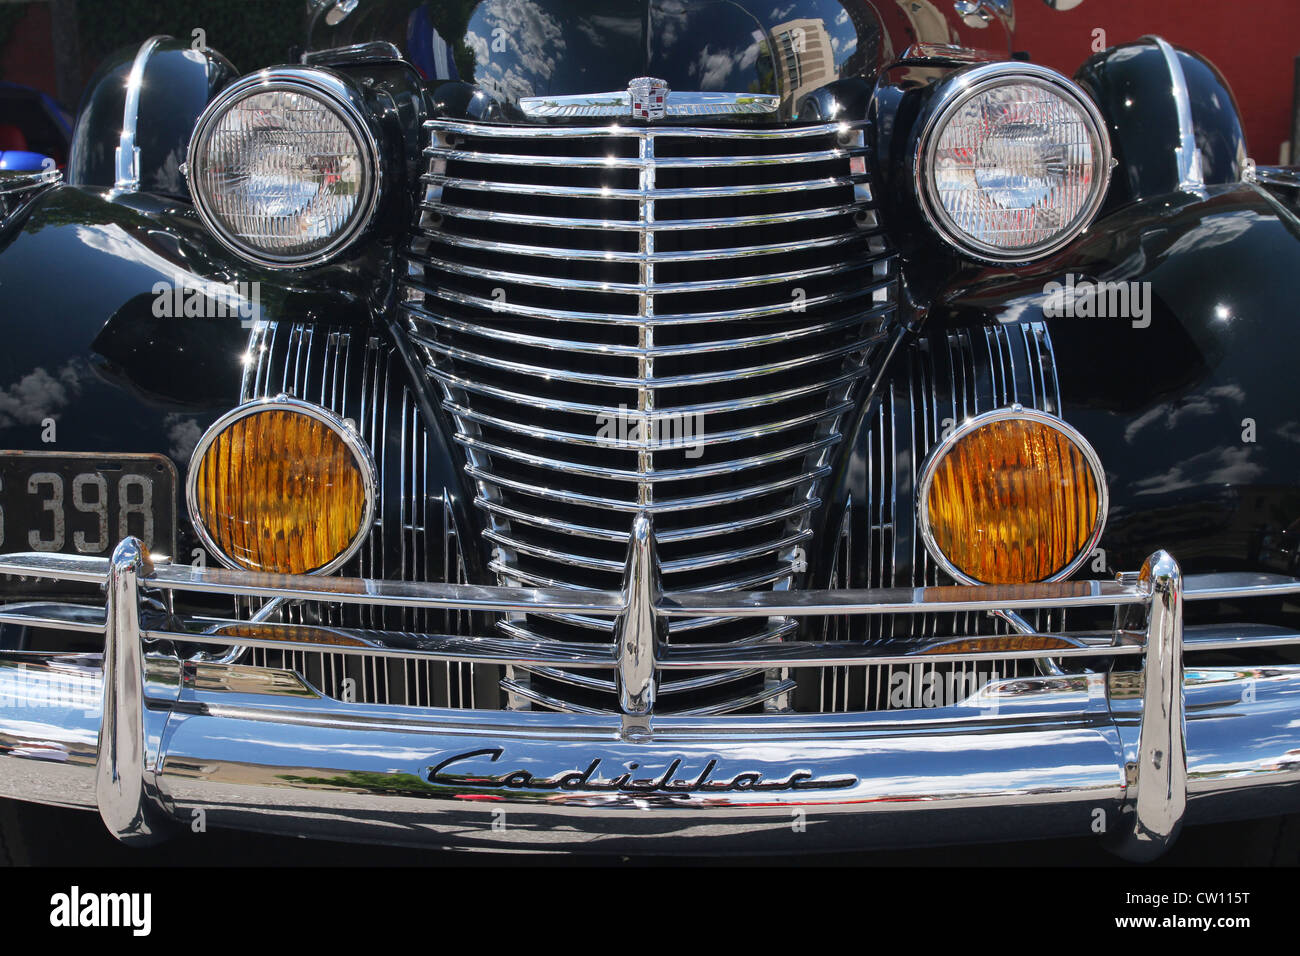 Auto- 1940 Cadillac Series 75. 1 de 29 jamais fait. Remarque cloud et réflexions de construction sont visibles. Banque D'Images